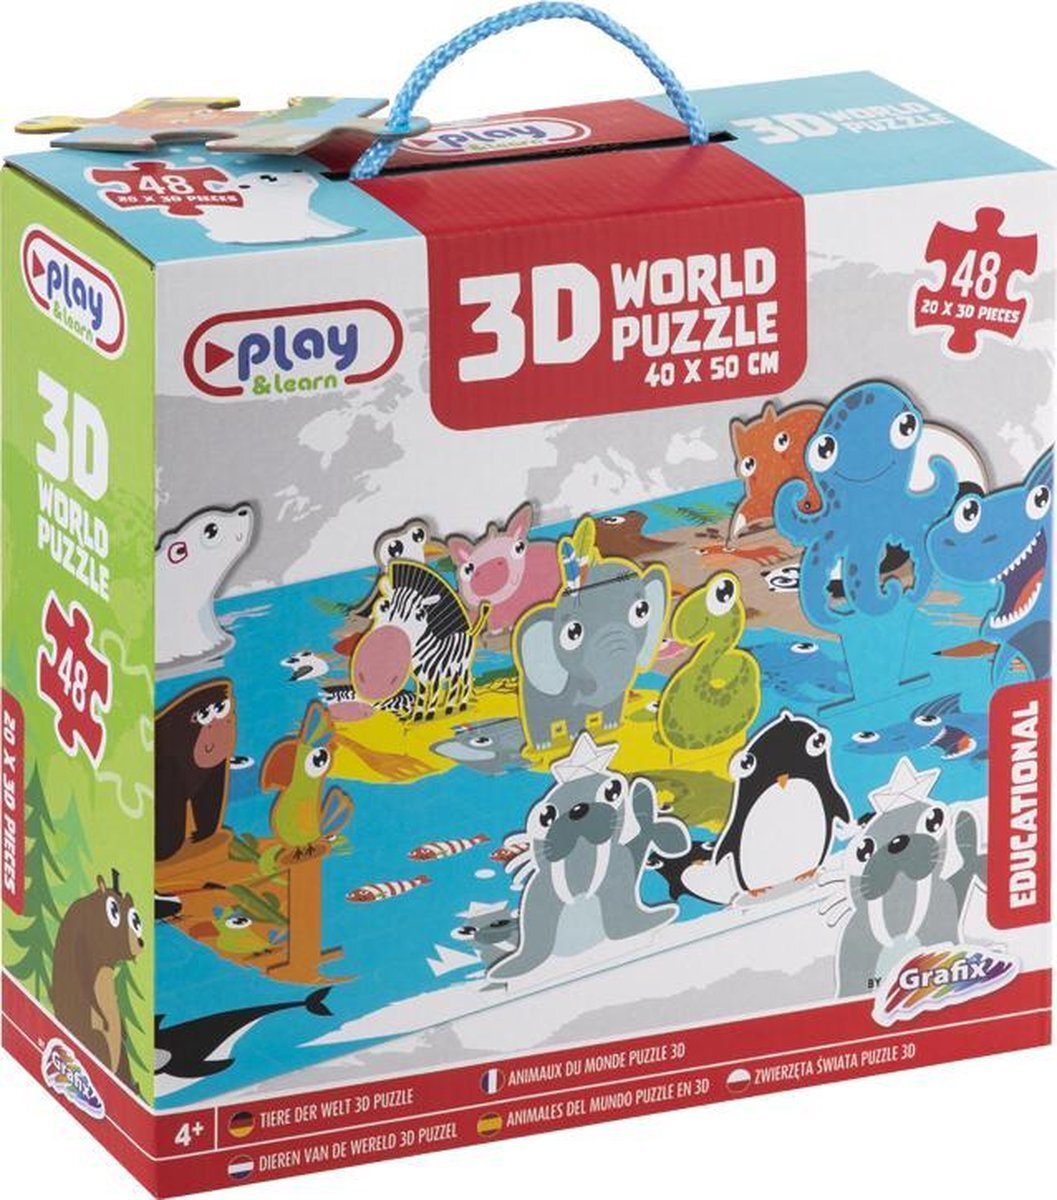 Grafix 3D Wereldpuzzel | 40 X 50 CM | 48 puzzelstukjes | puzzel voor kinderen vanaf 4 jaar | educatieve puzzel | puzzel dieren